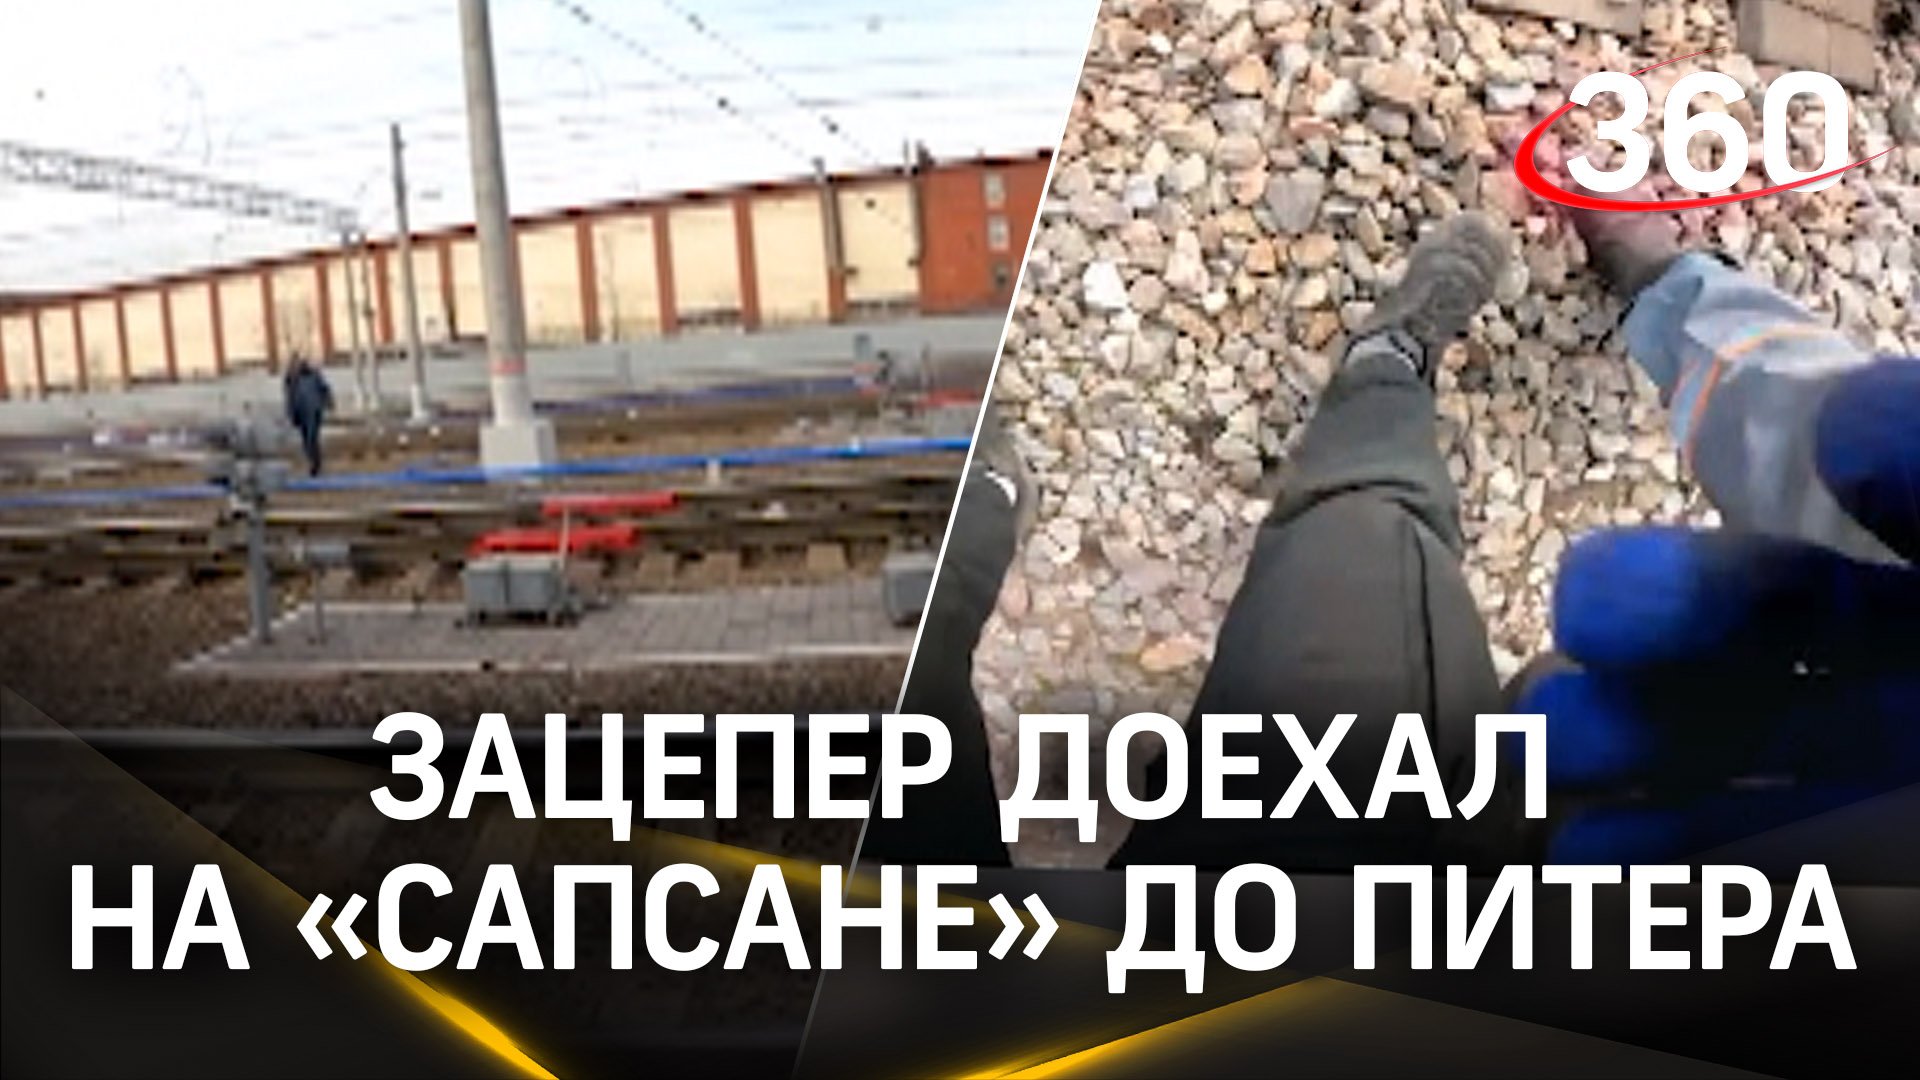 Ради экстрима прицепился к поезду - 17-летнего зацепера задержала полиция в Петербурге